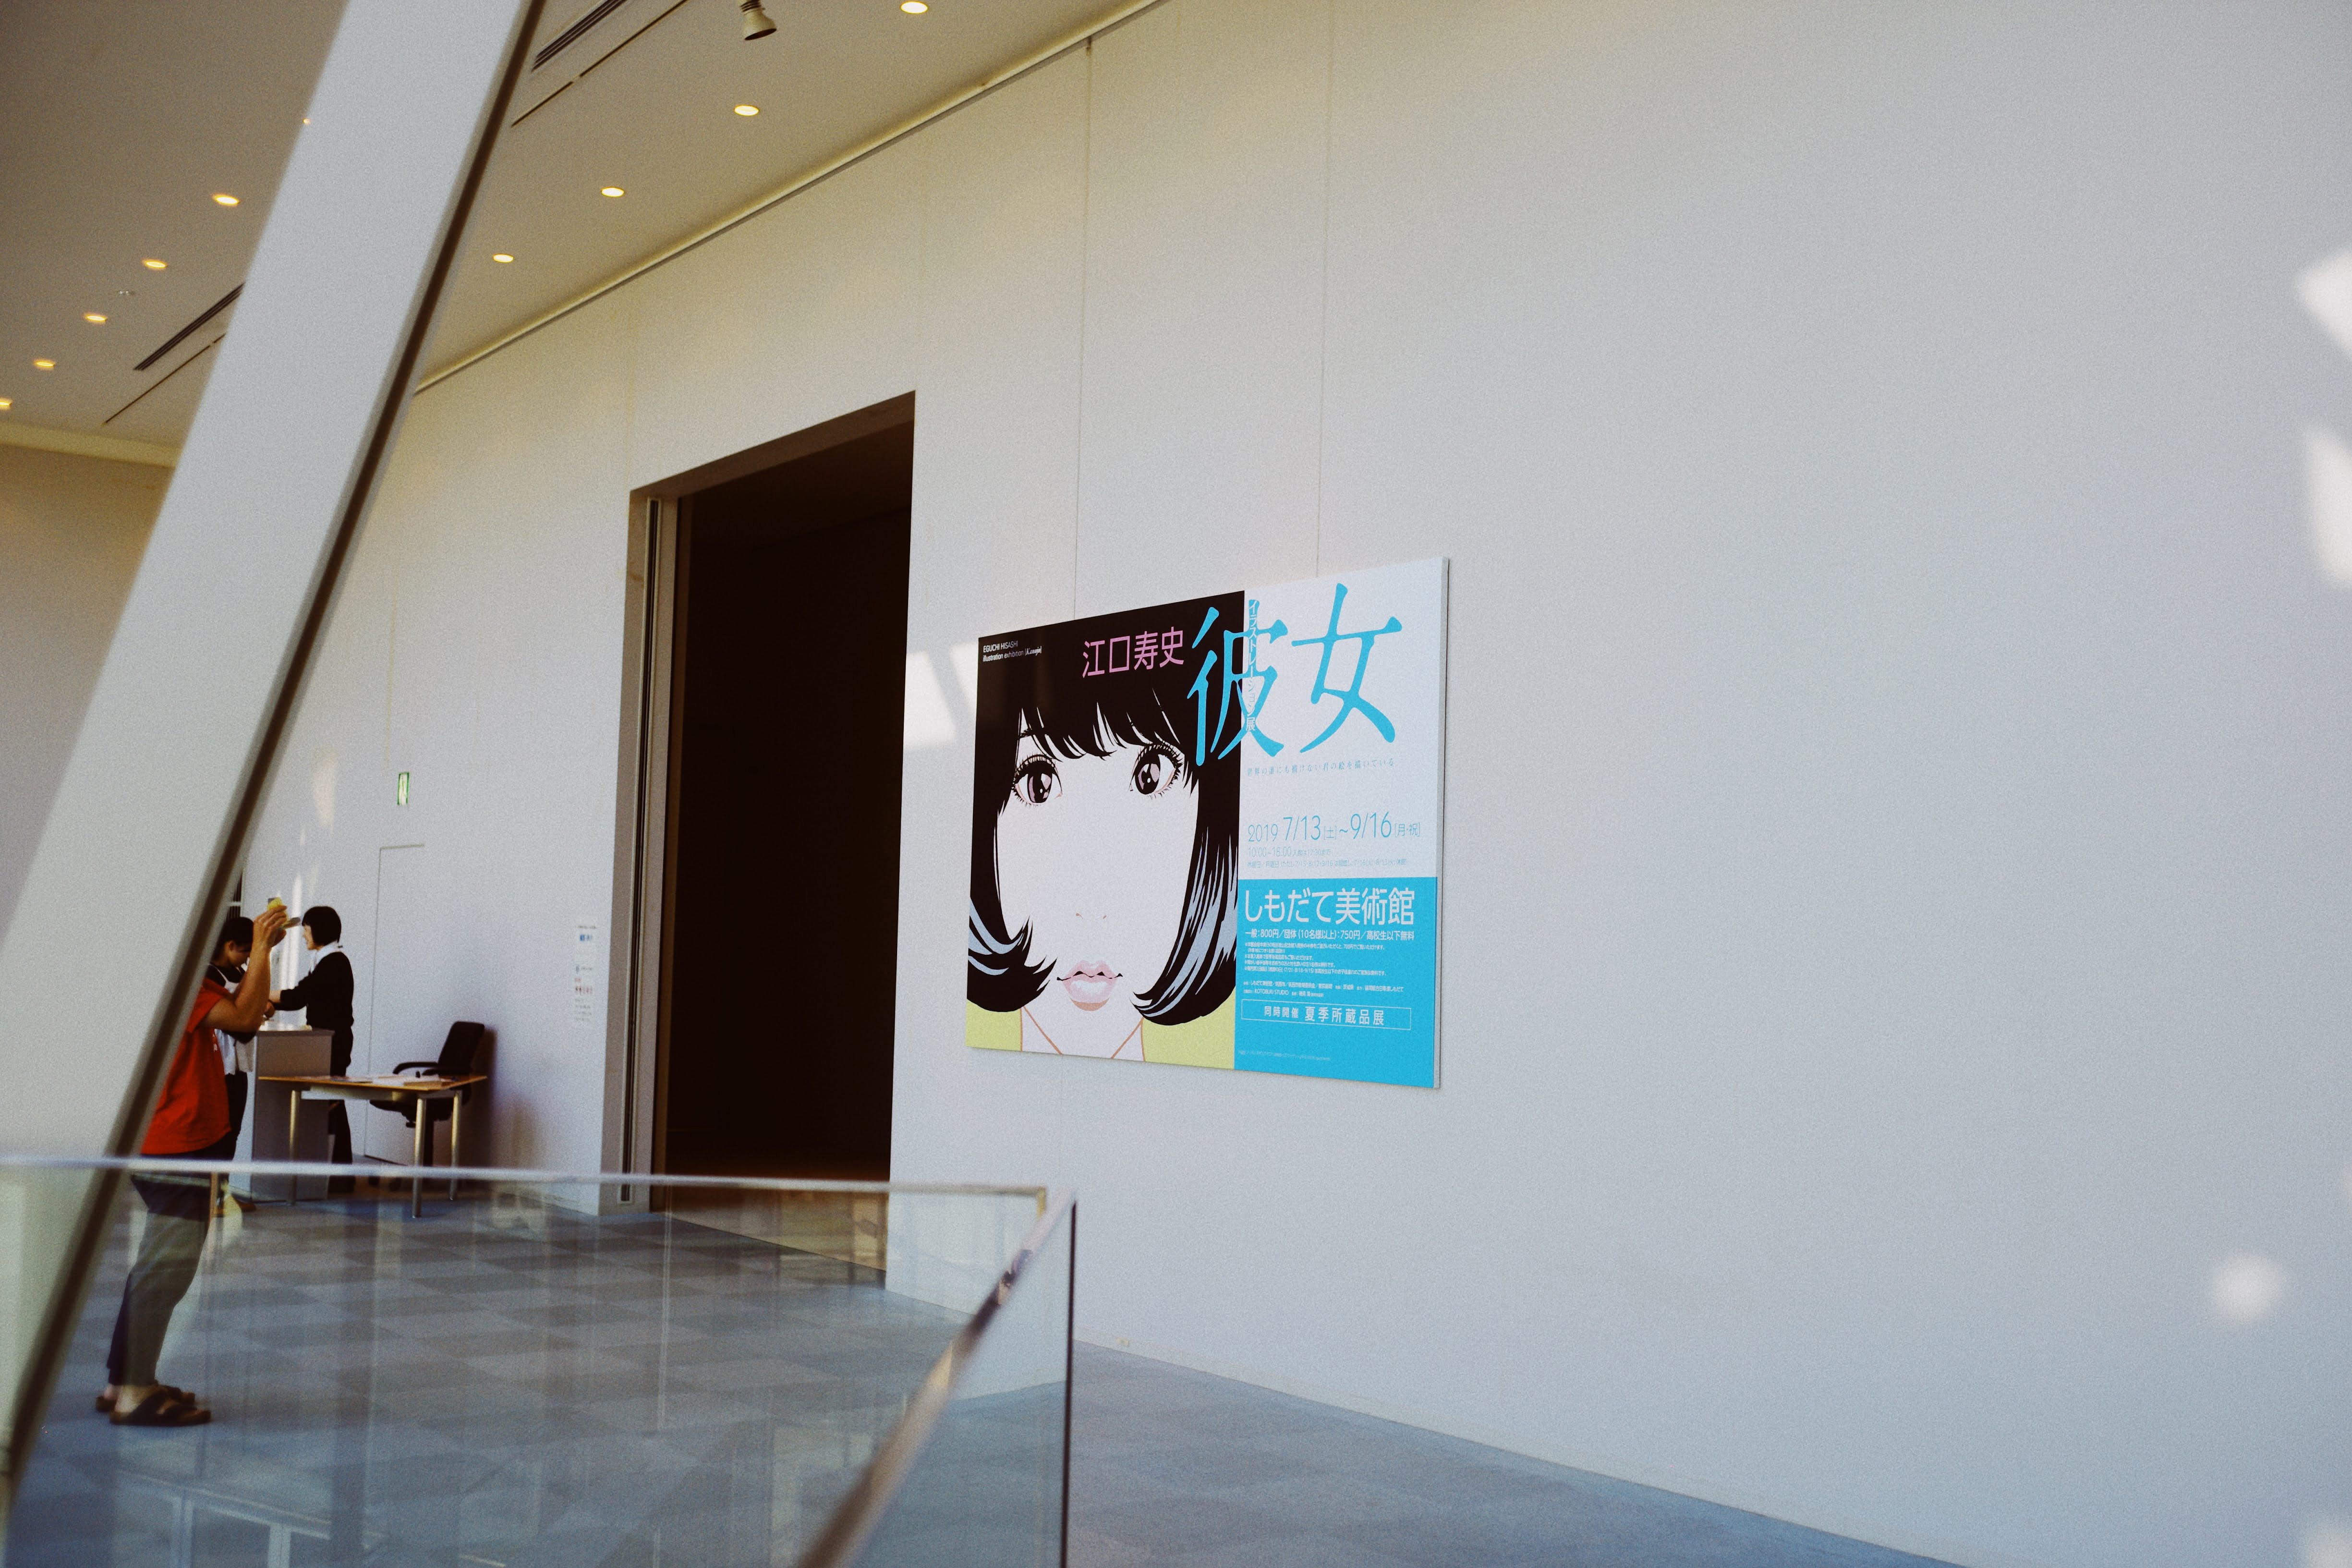 「江口寿史」展覧会へ。_image3